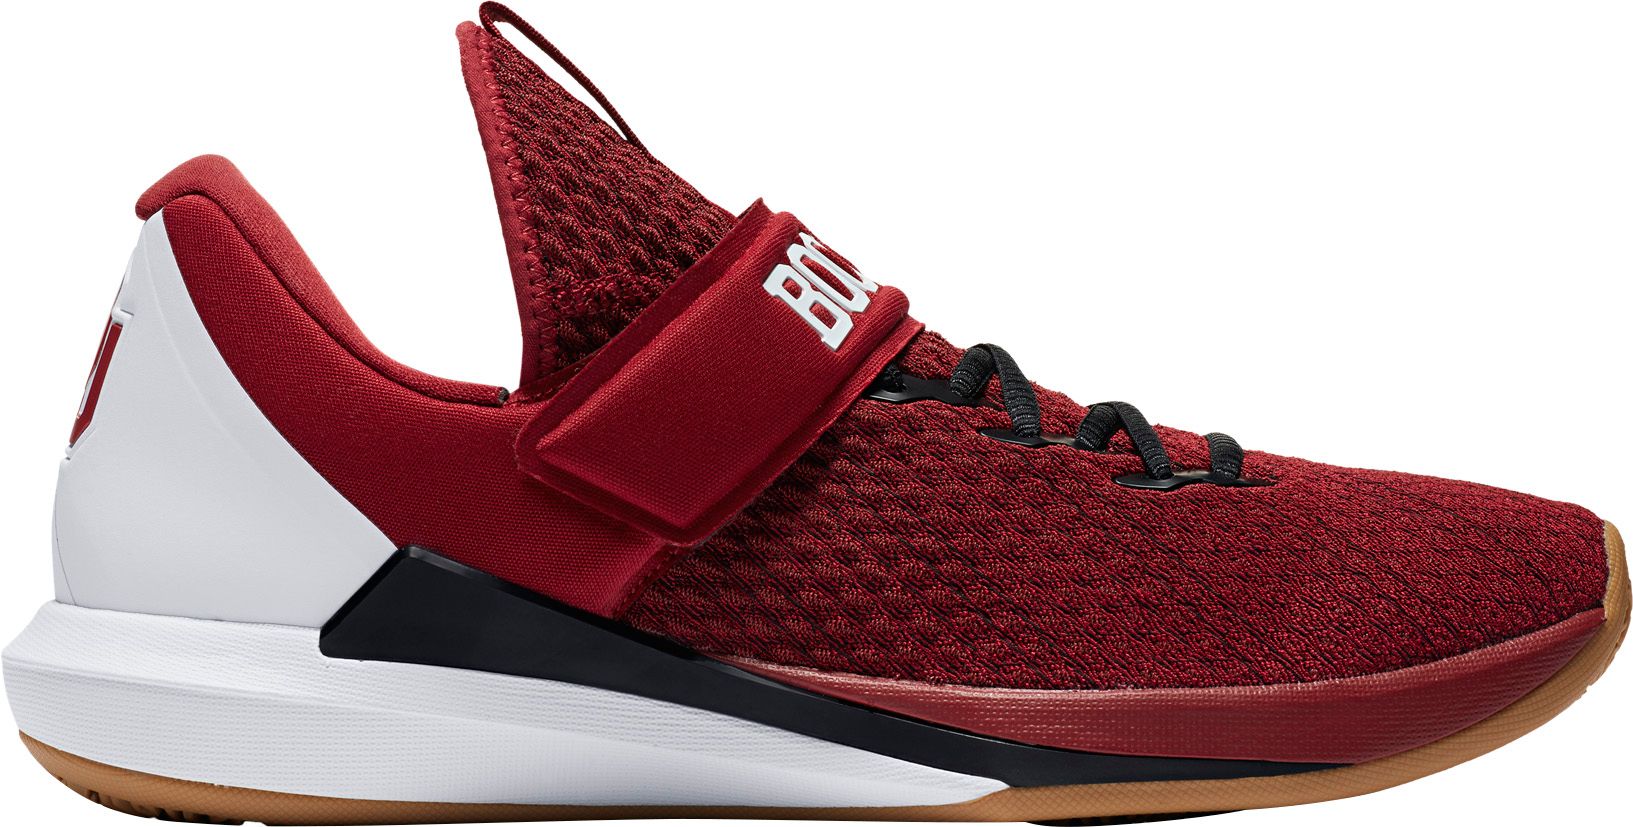 Men's Jordan Basketball Shoes | Best Price Guarantee at DICK'S